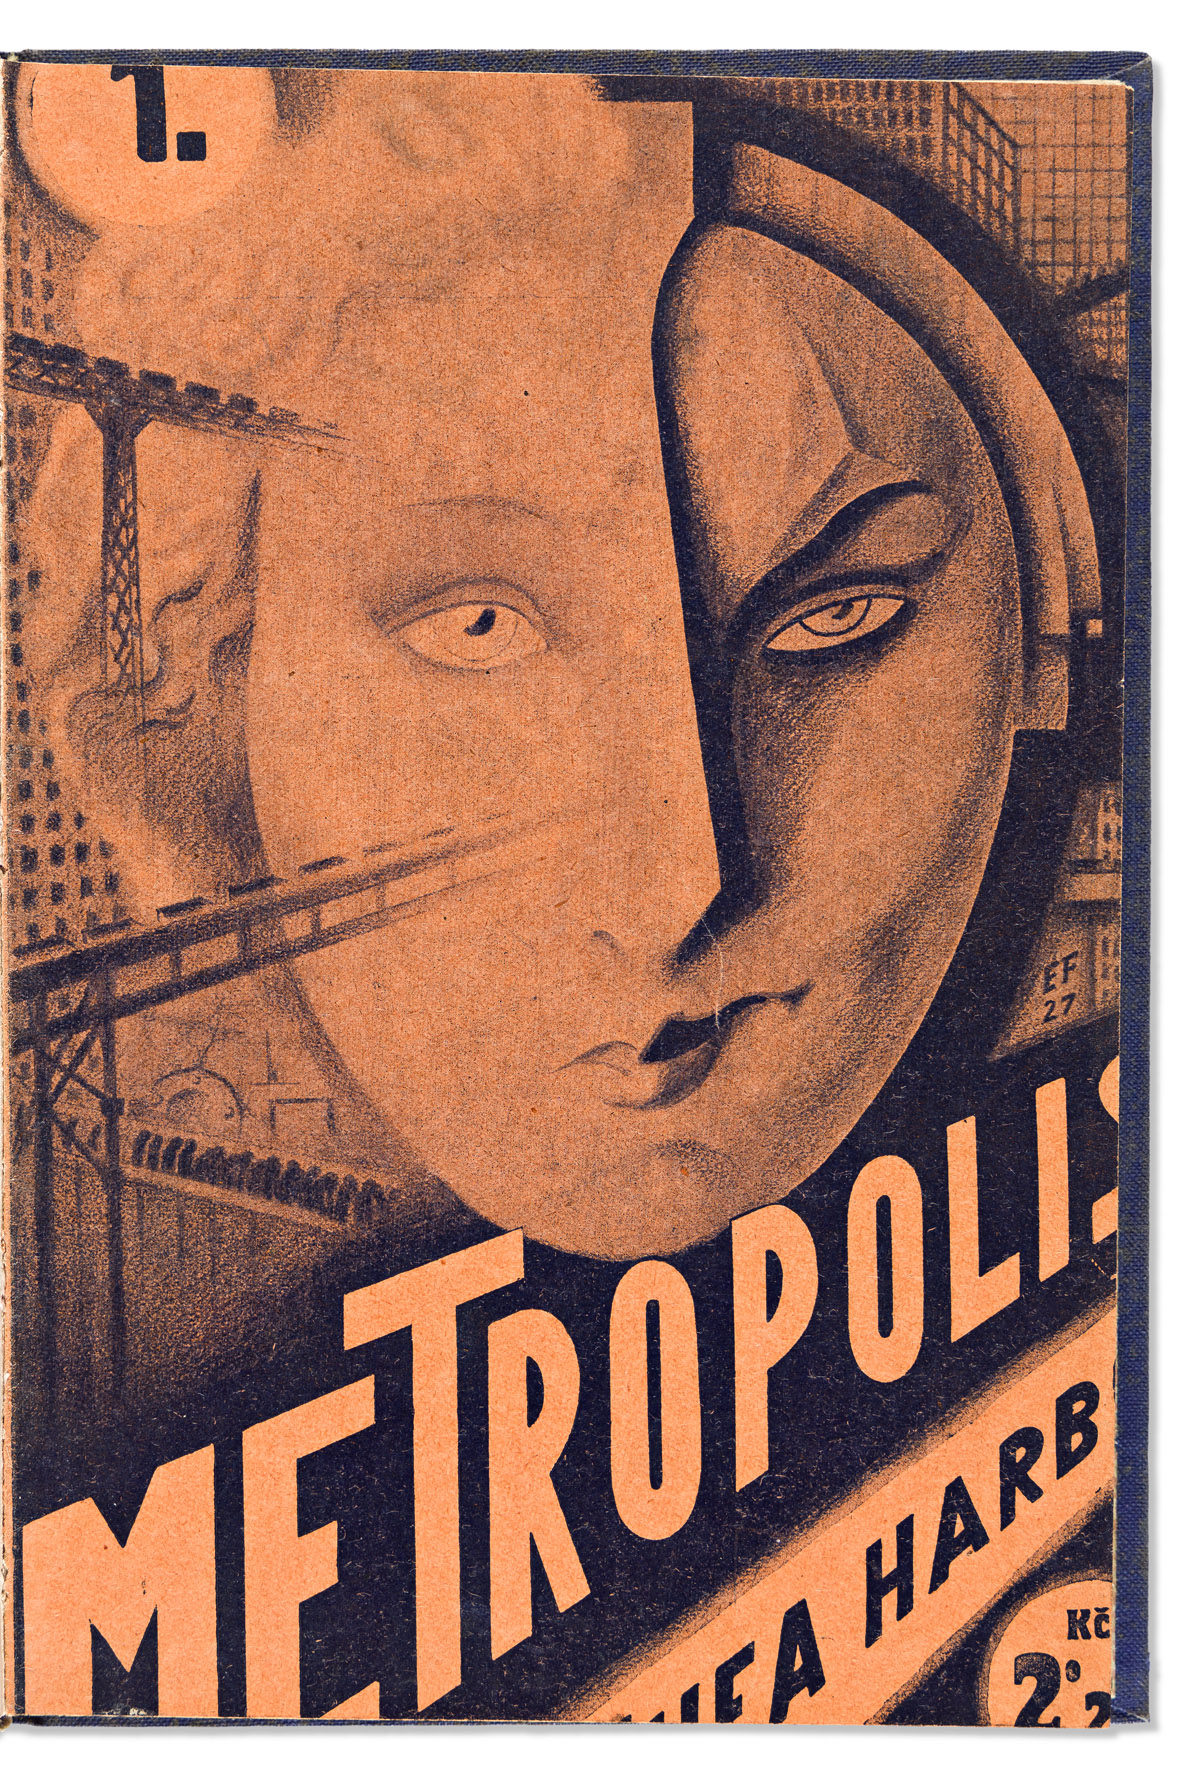 Harbou, Thea von (1888-1954) Metropolis.